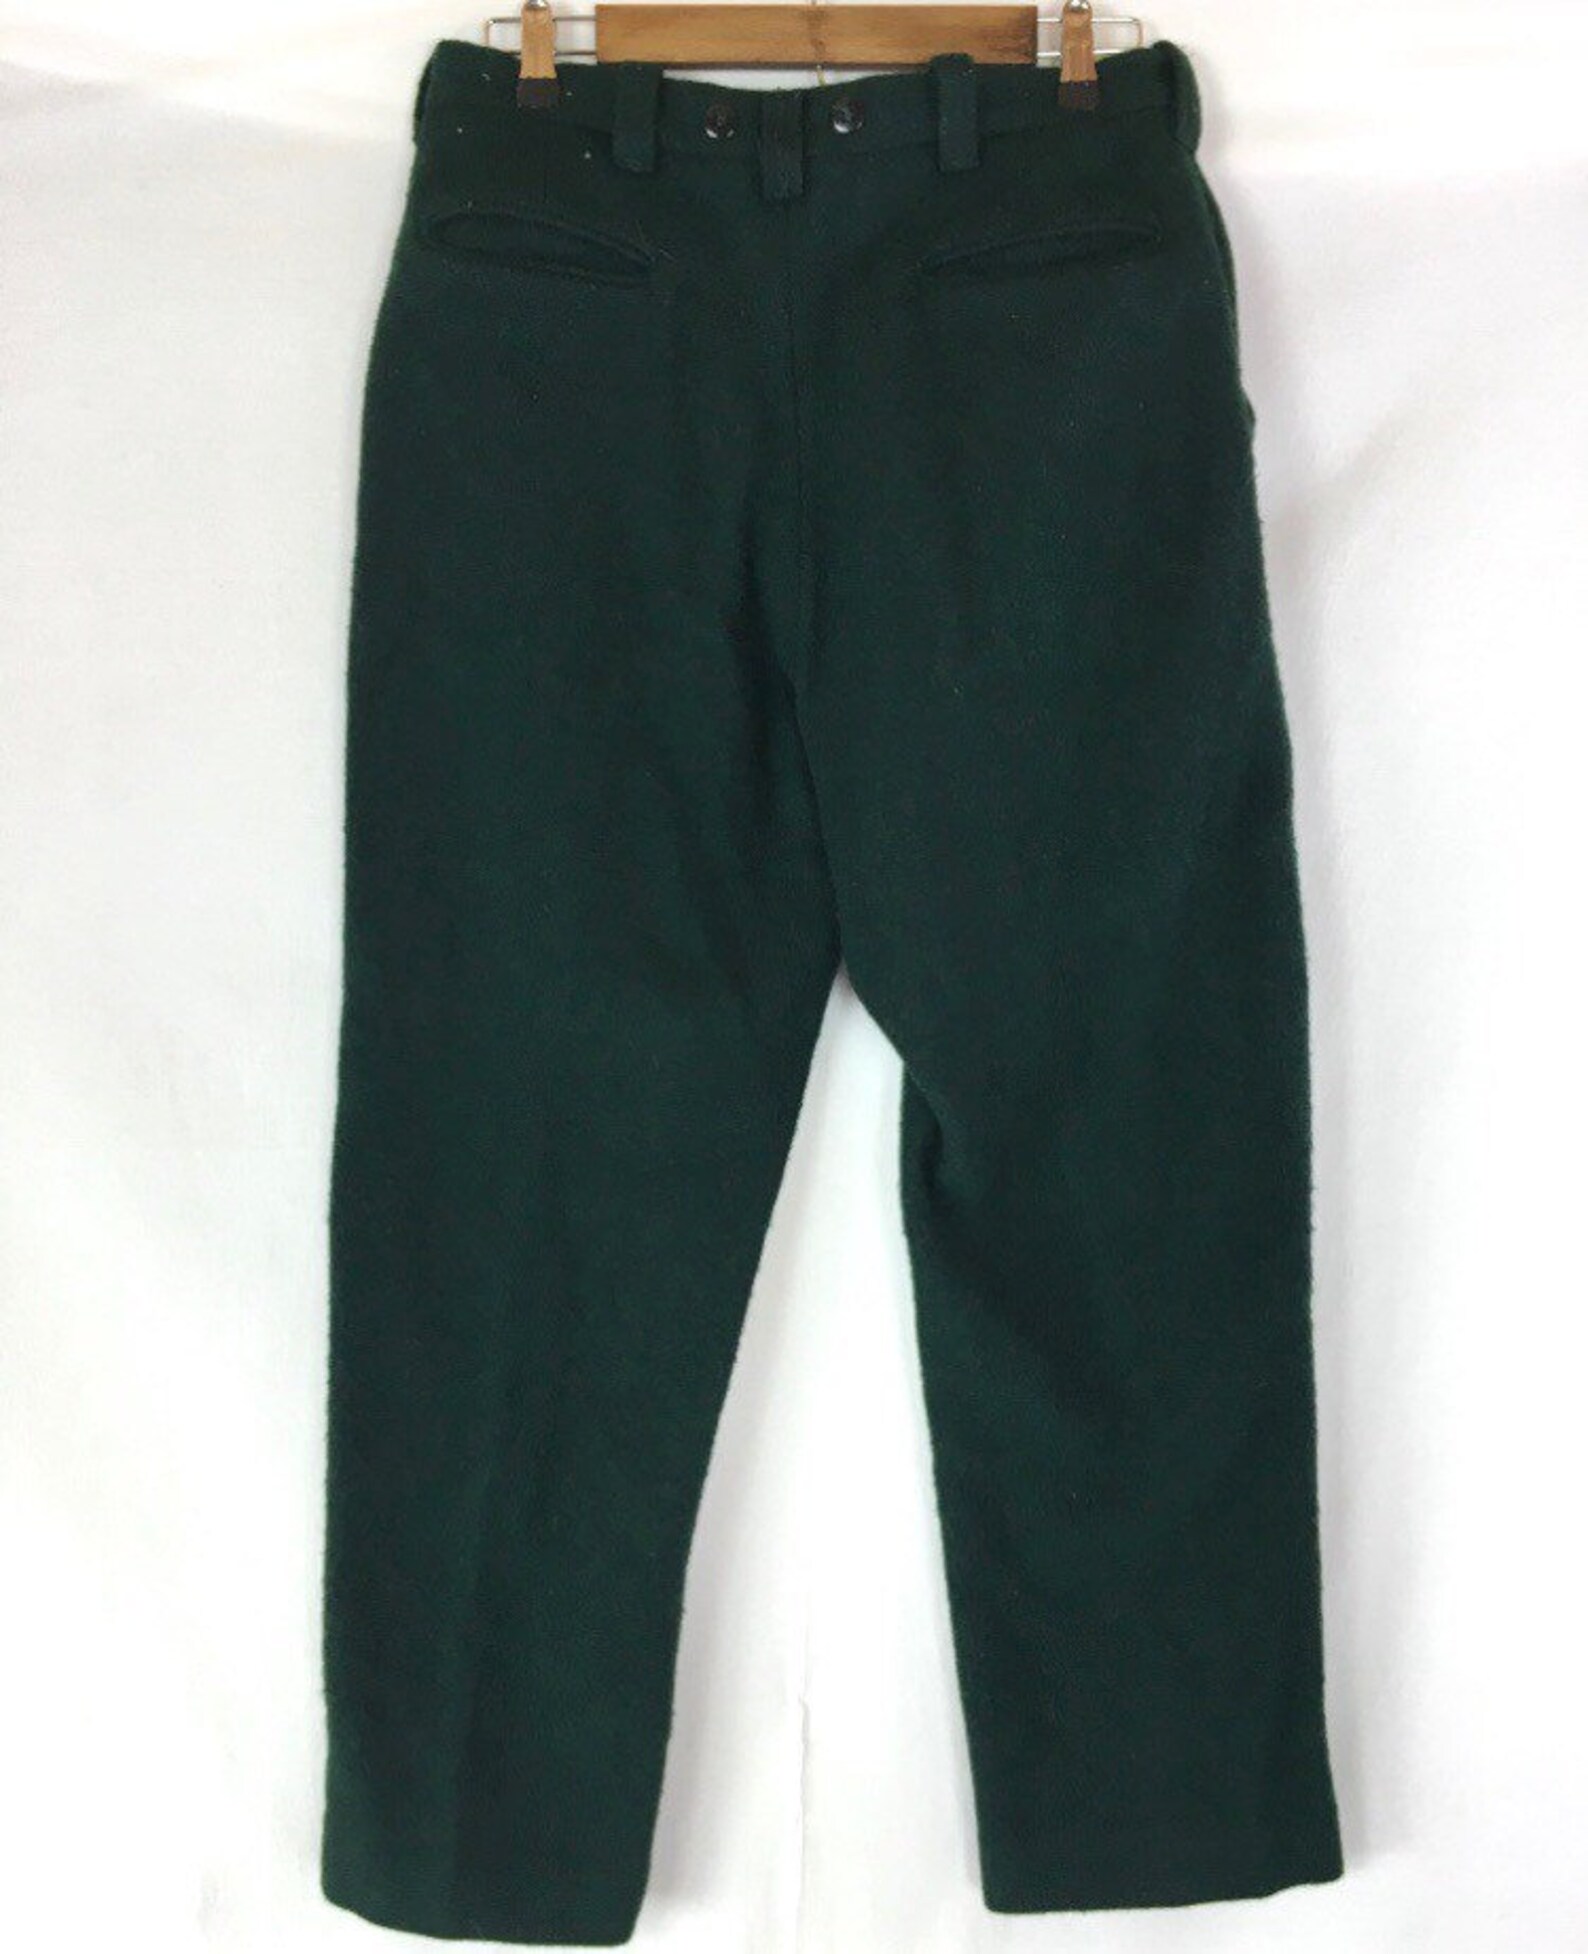 Vintage Green Wool Hunting Pants | Etsy